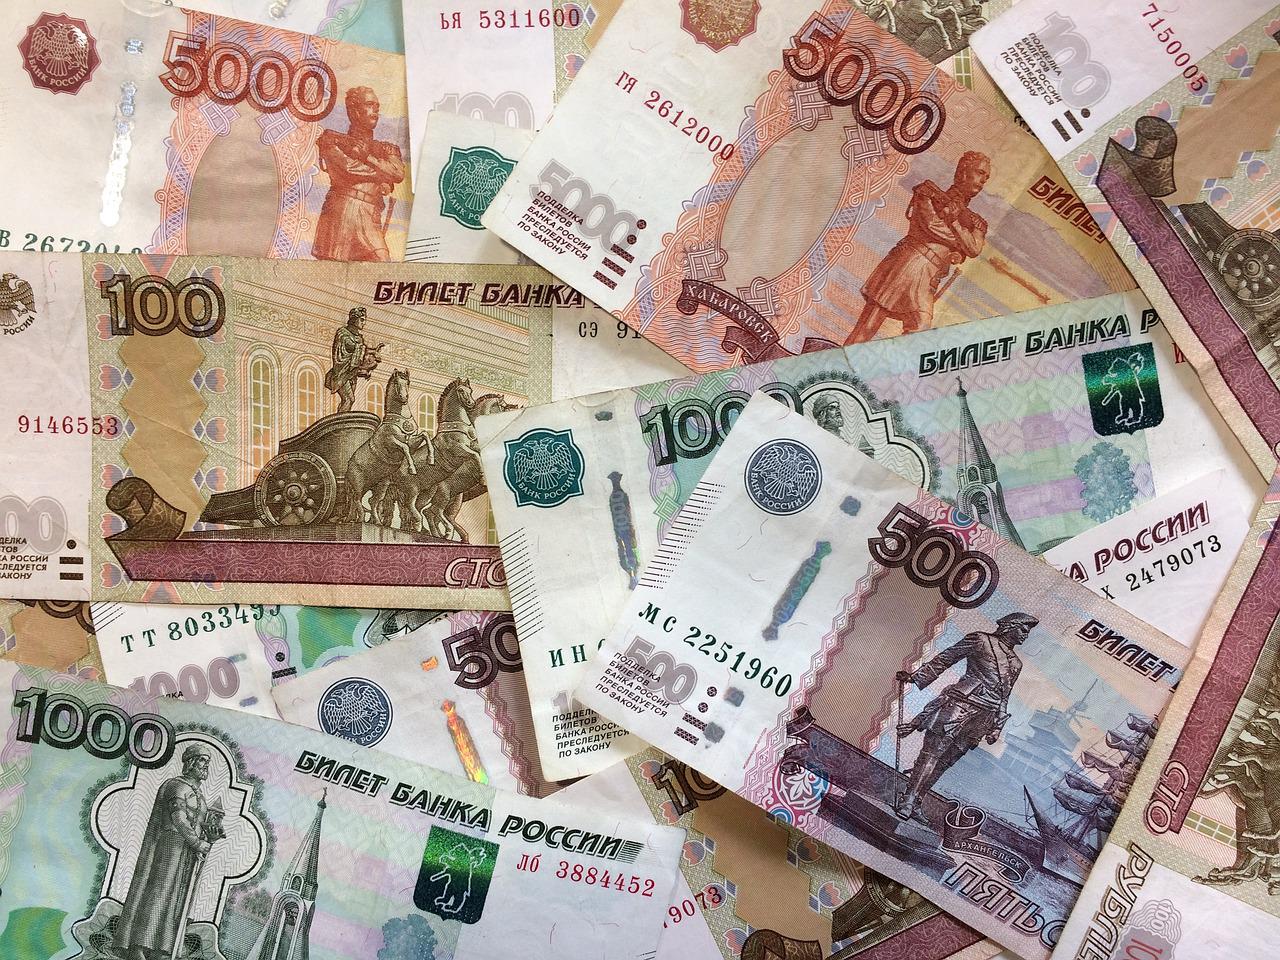 Россияне экстренно получат по 10 000 рублей от государства. Названа дата перевода денег